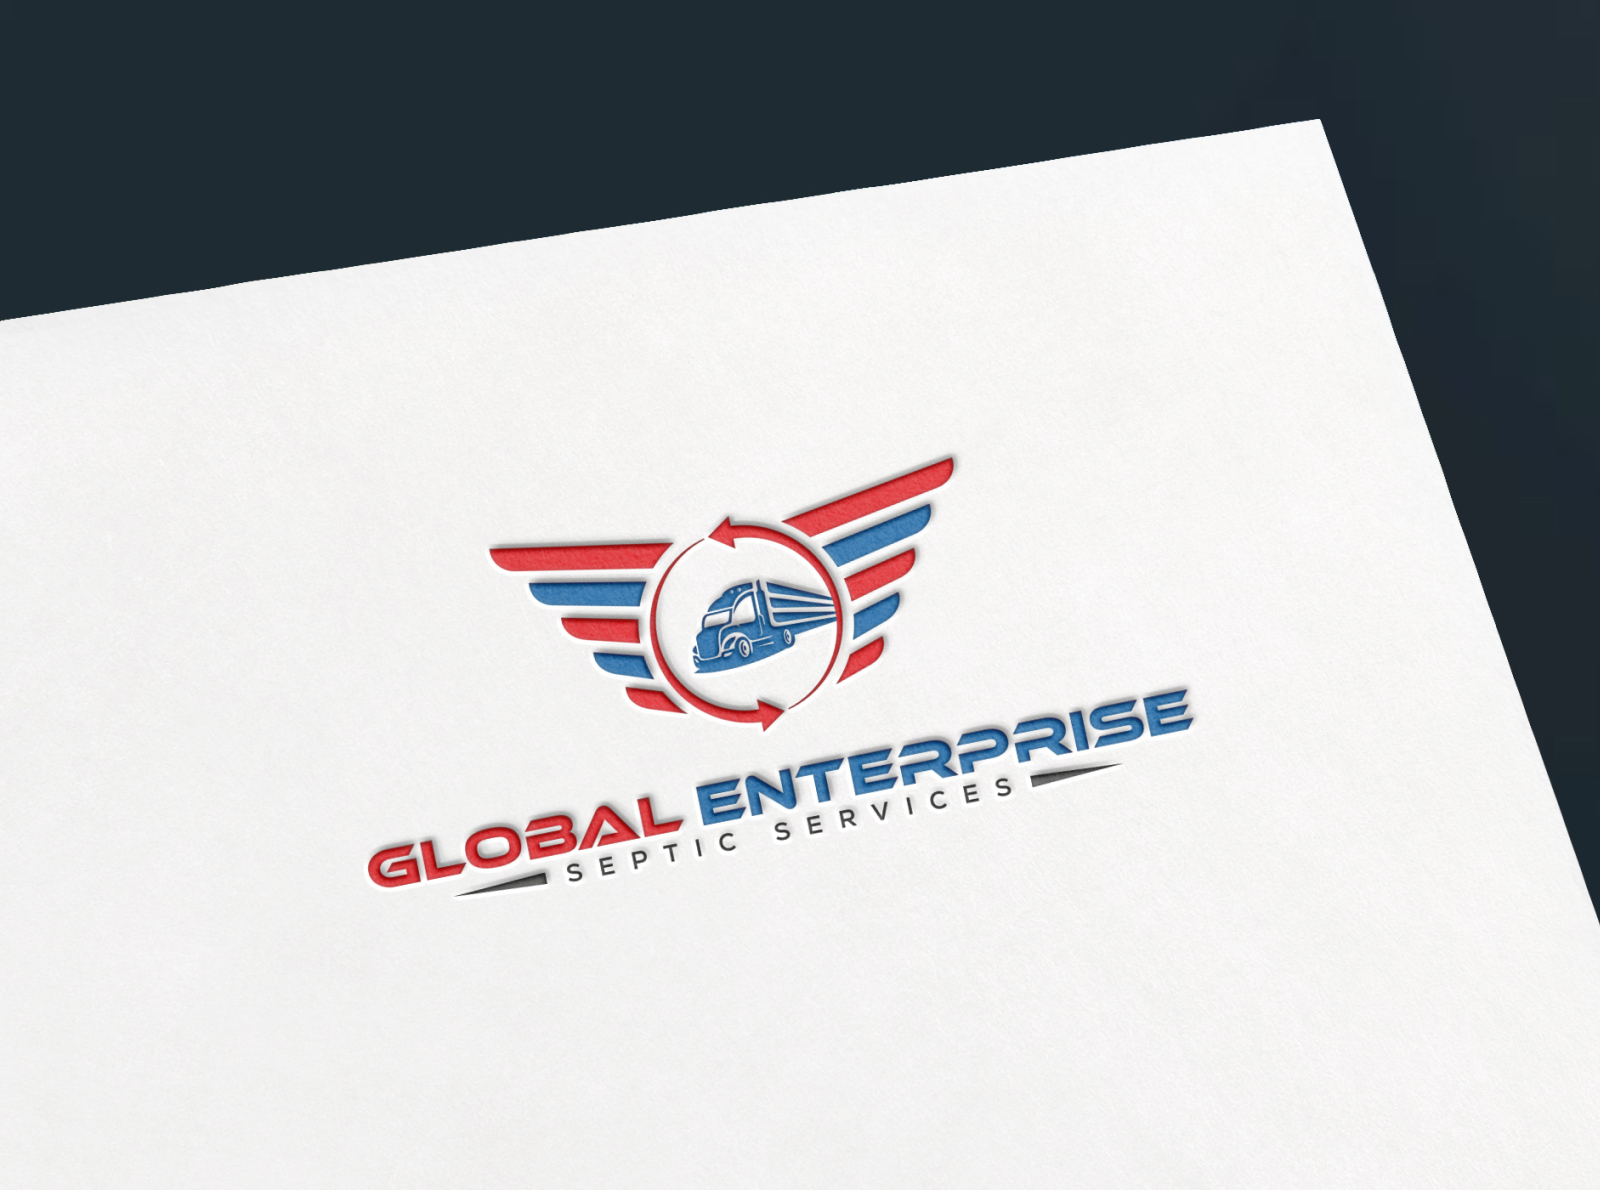 Enterprise logo Stock Photos, Royalty Free Enterprise logo Images |  Depositphotos